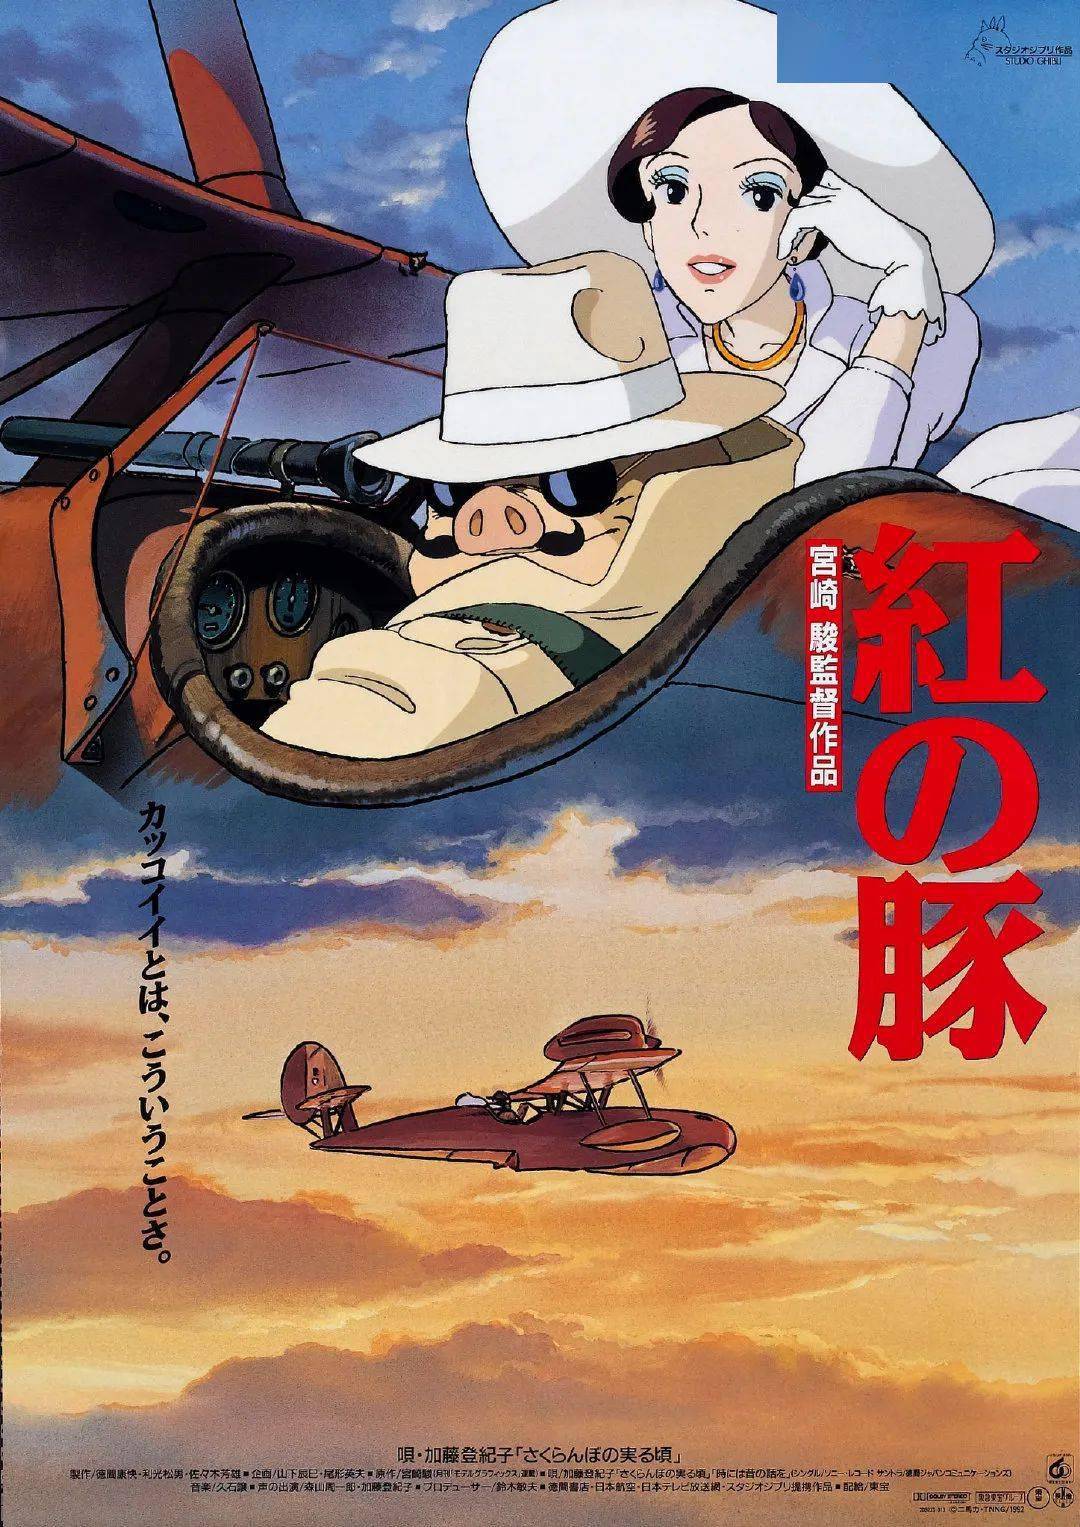 重磅丨西方权威电影杂志眼中的日本动画 视与听 日本动画电影五十选 专题